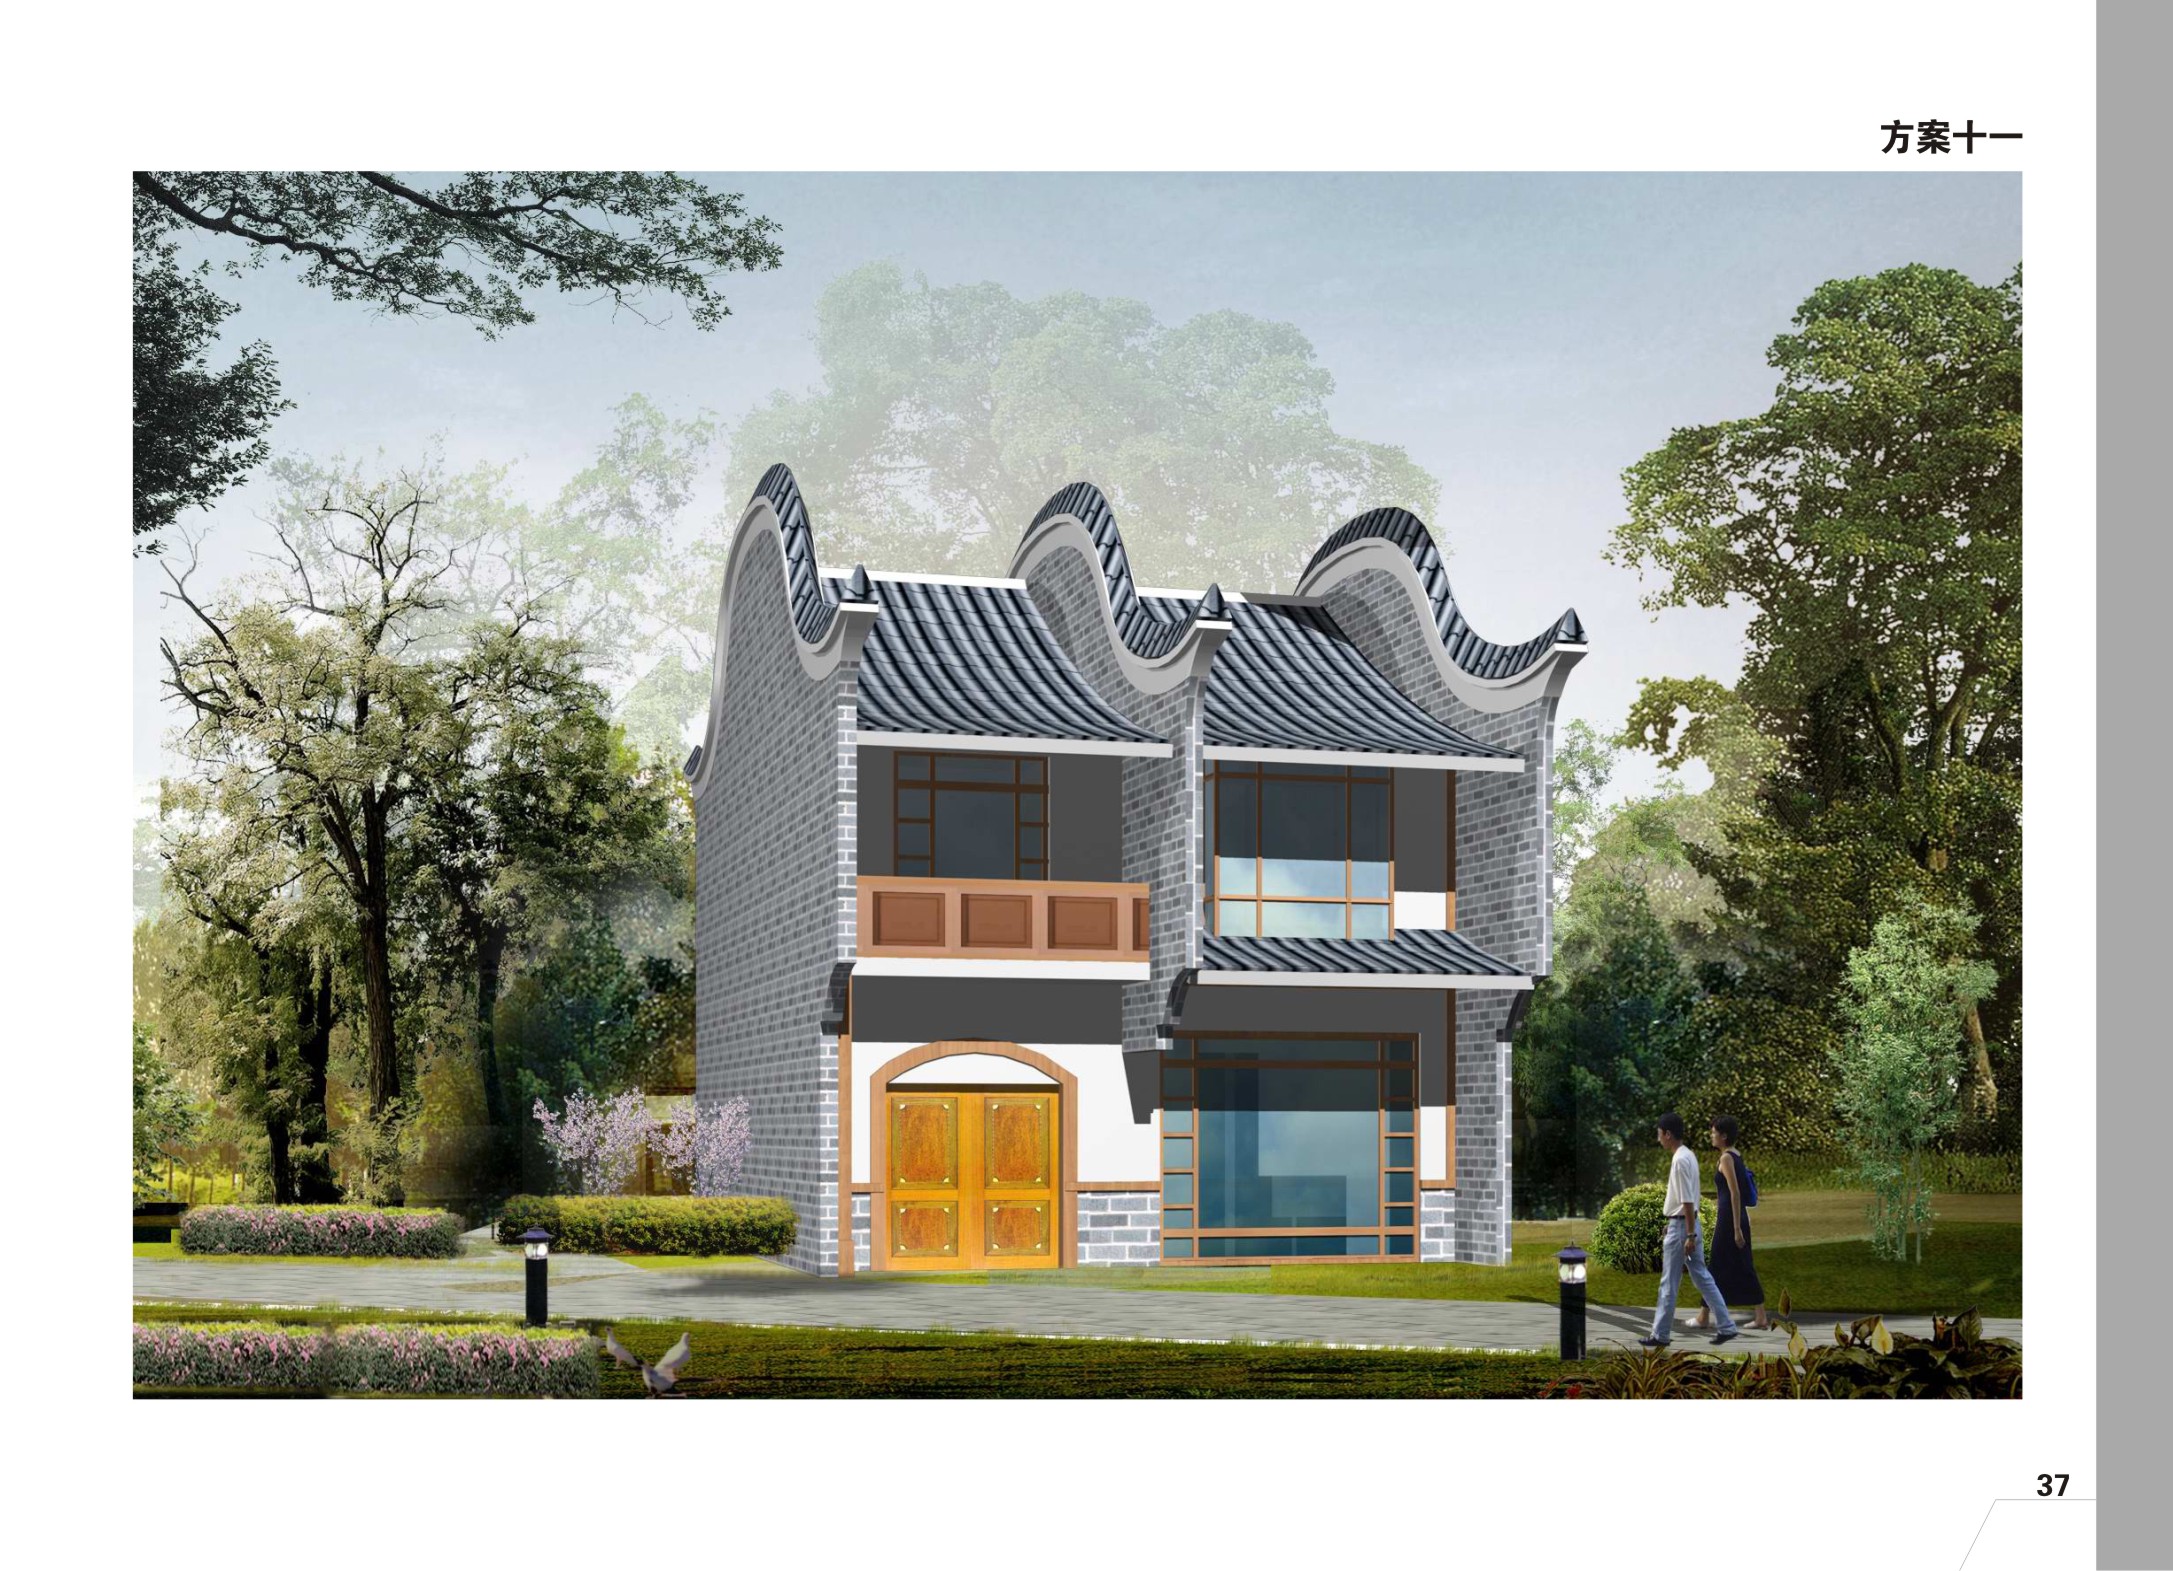 118.28平方米二层单家独院式农村建筑设计cad图